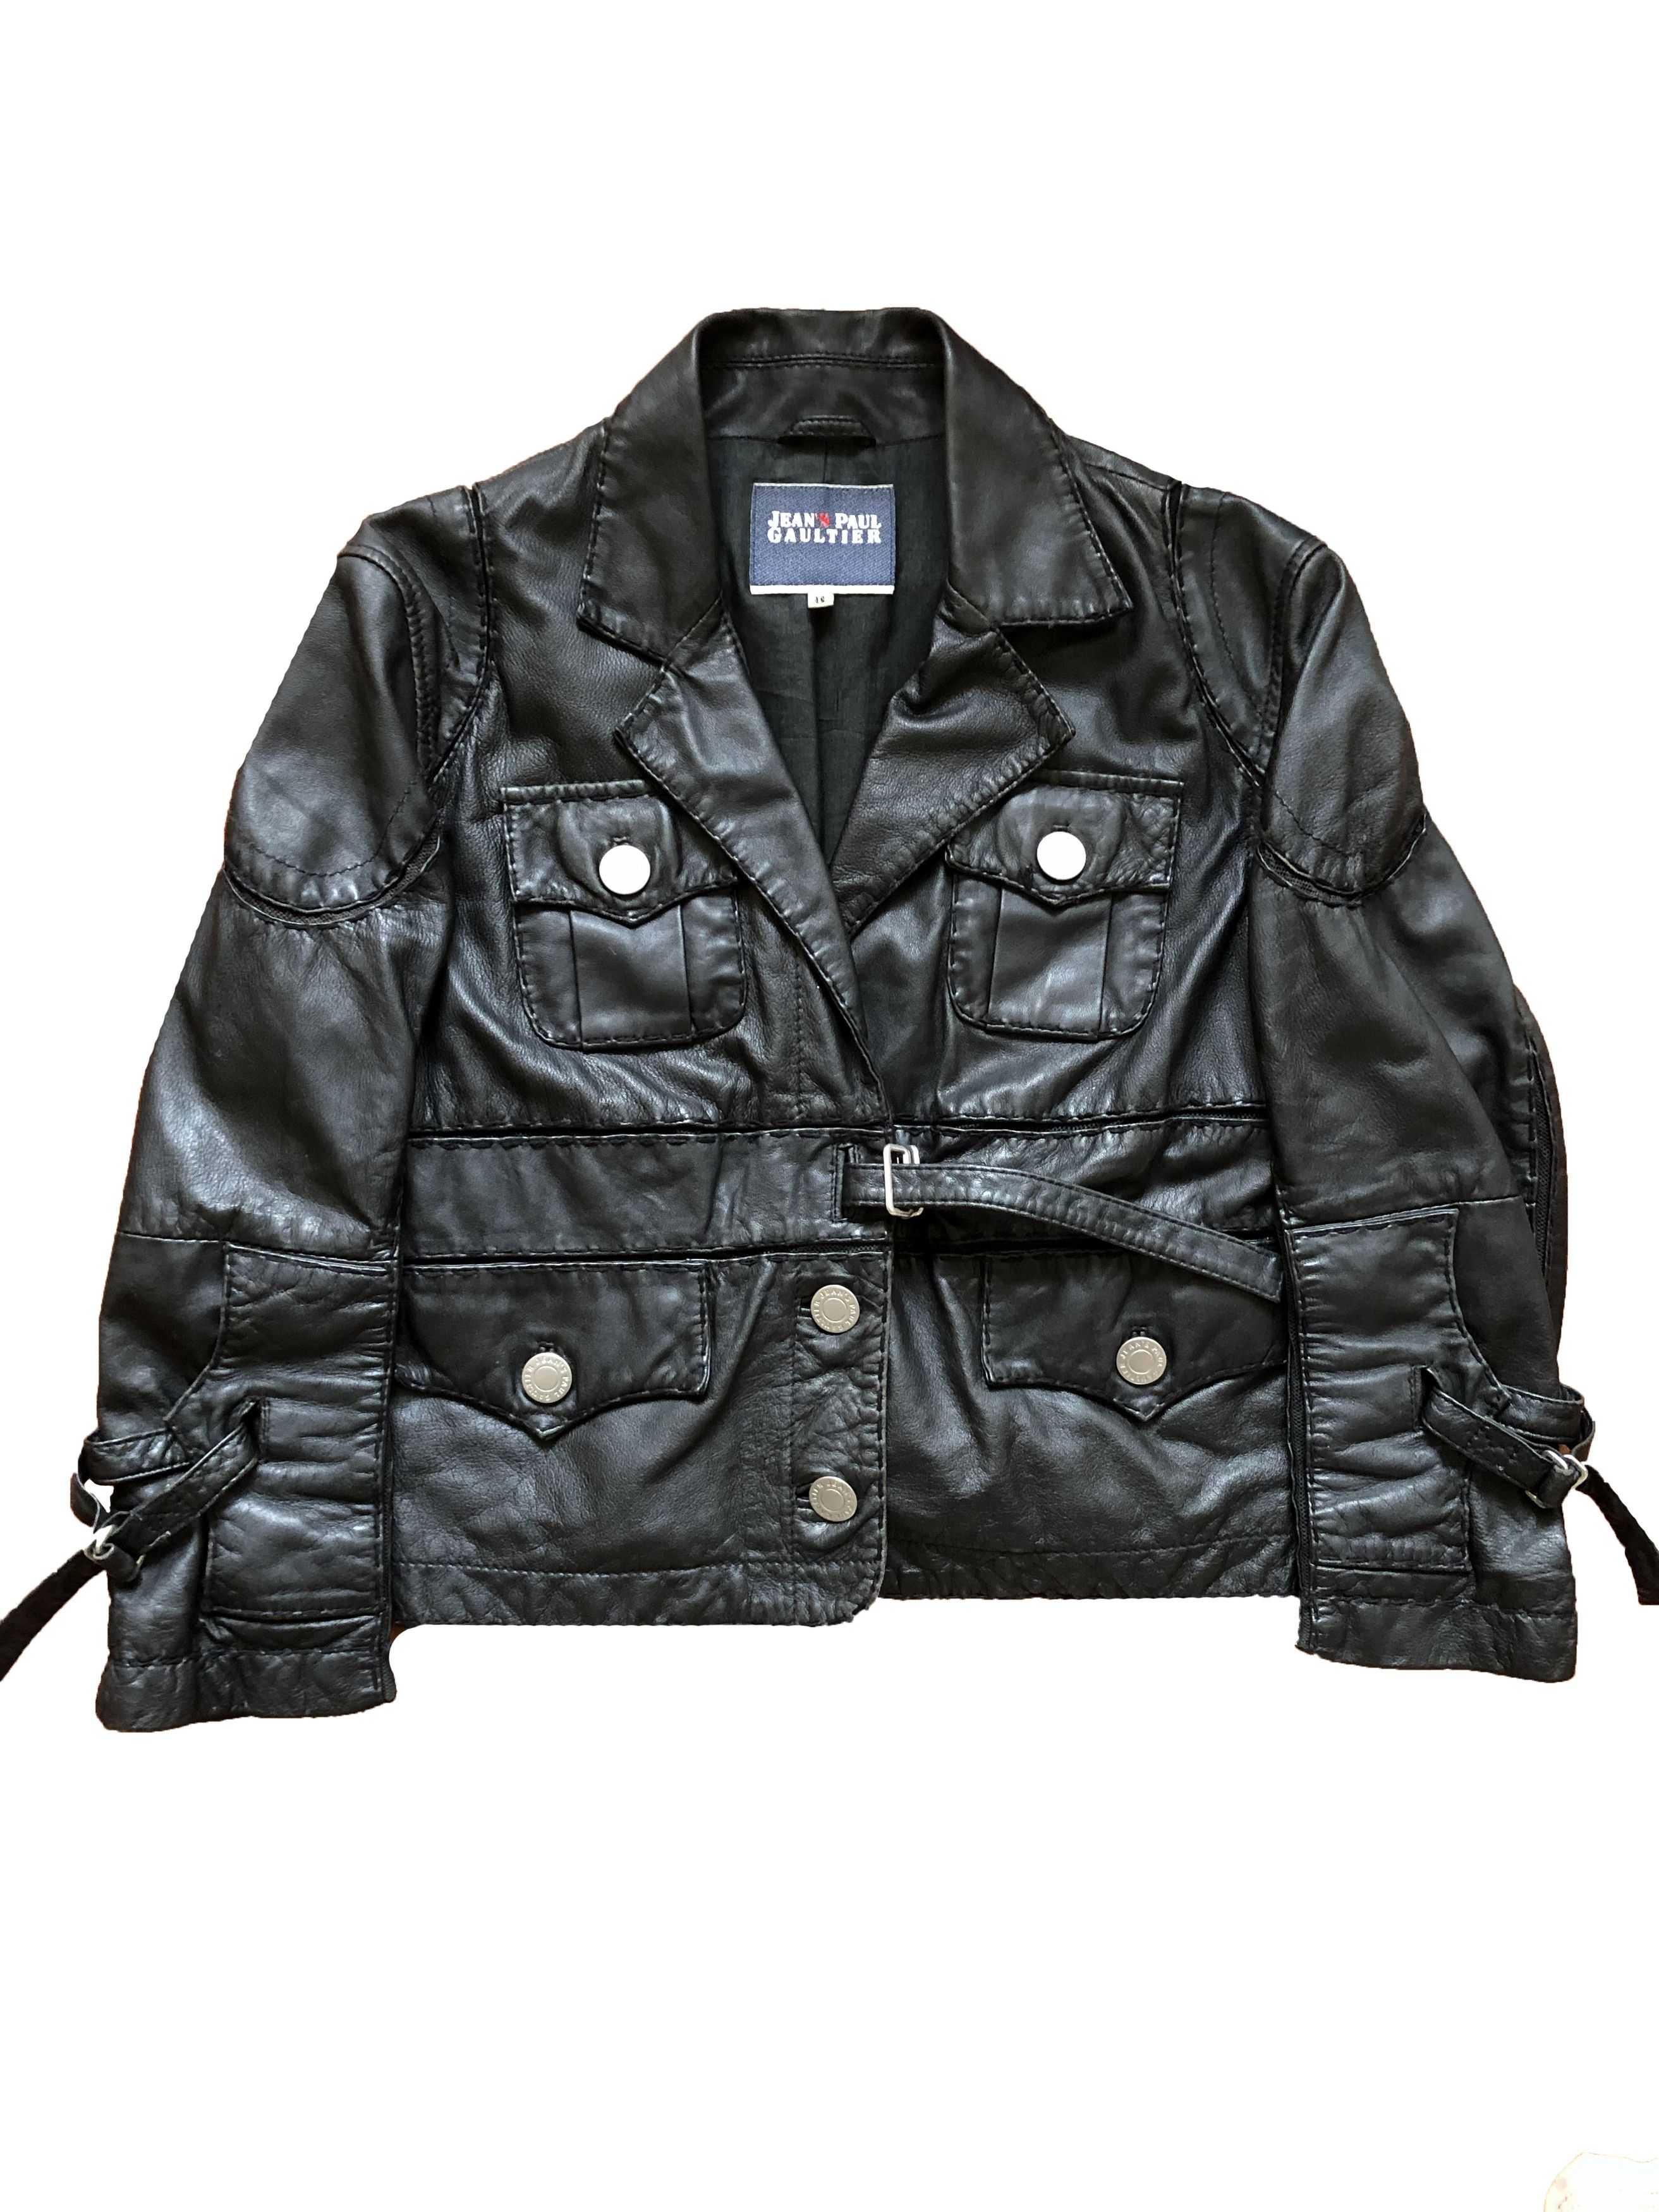 Men's Jean Paul Gaultier Leather Jackets | Grailed